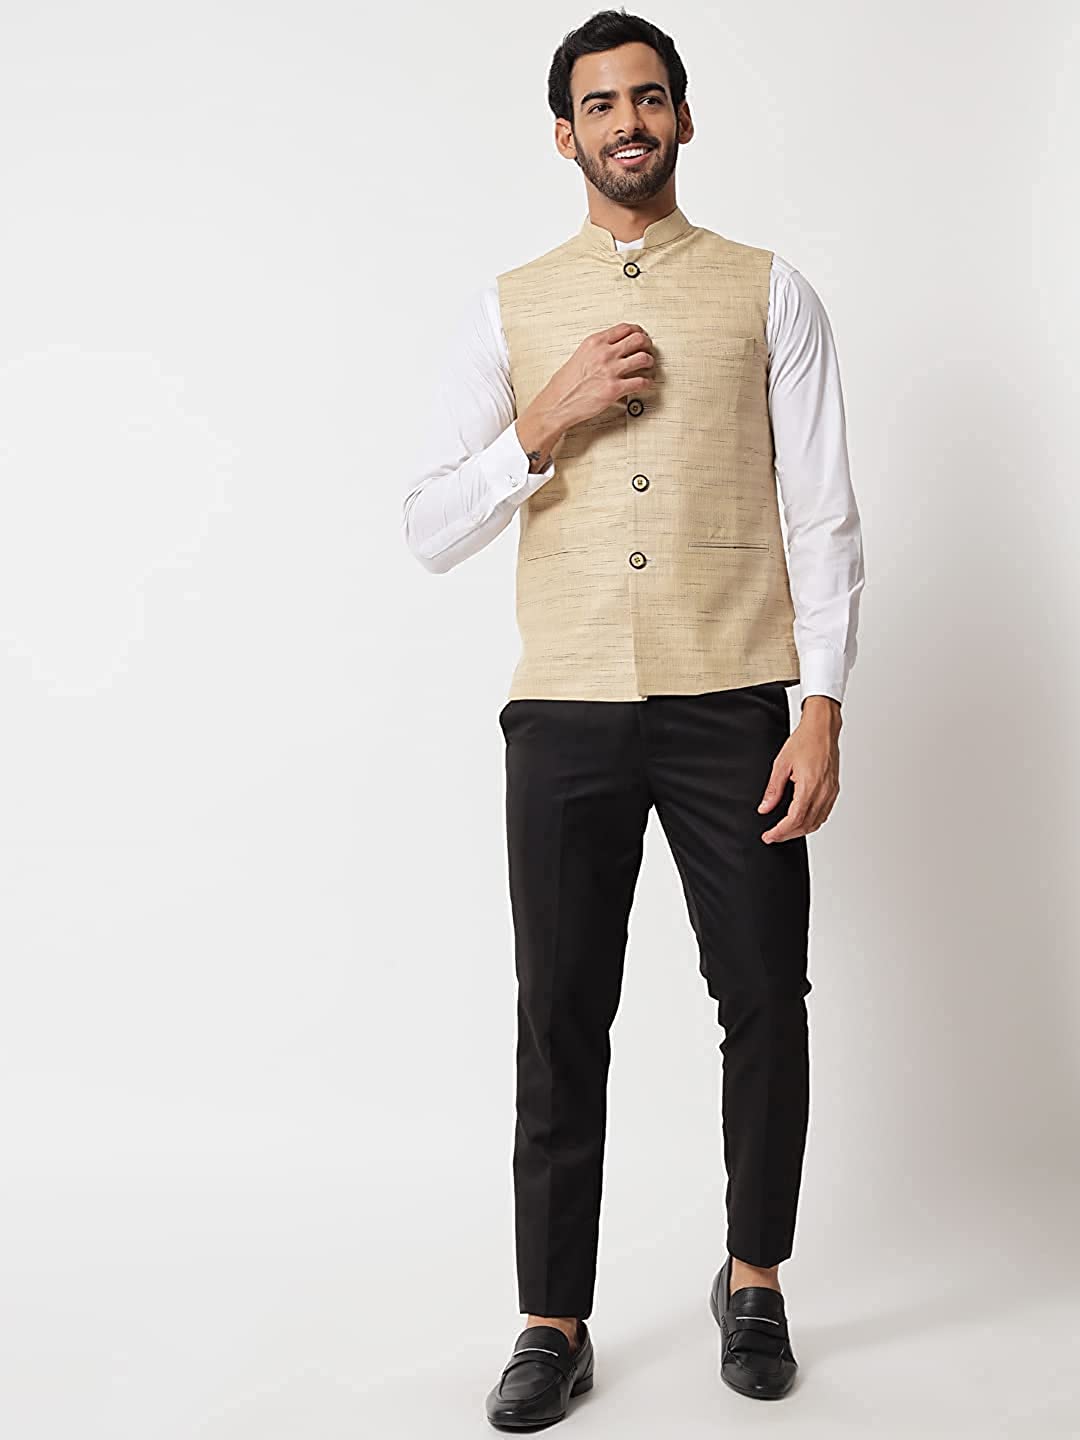 Vastraa Fusion Modi Jacket / Waistcoat Cotton Silk Look in Textured Print Nehru Jacket